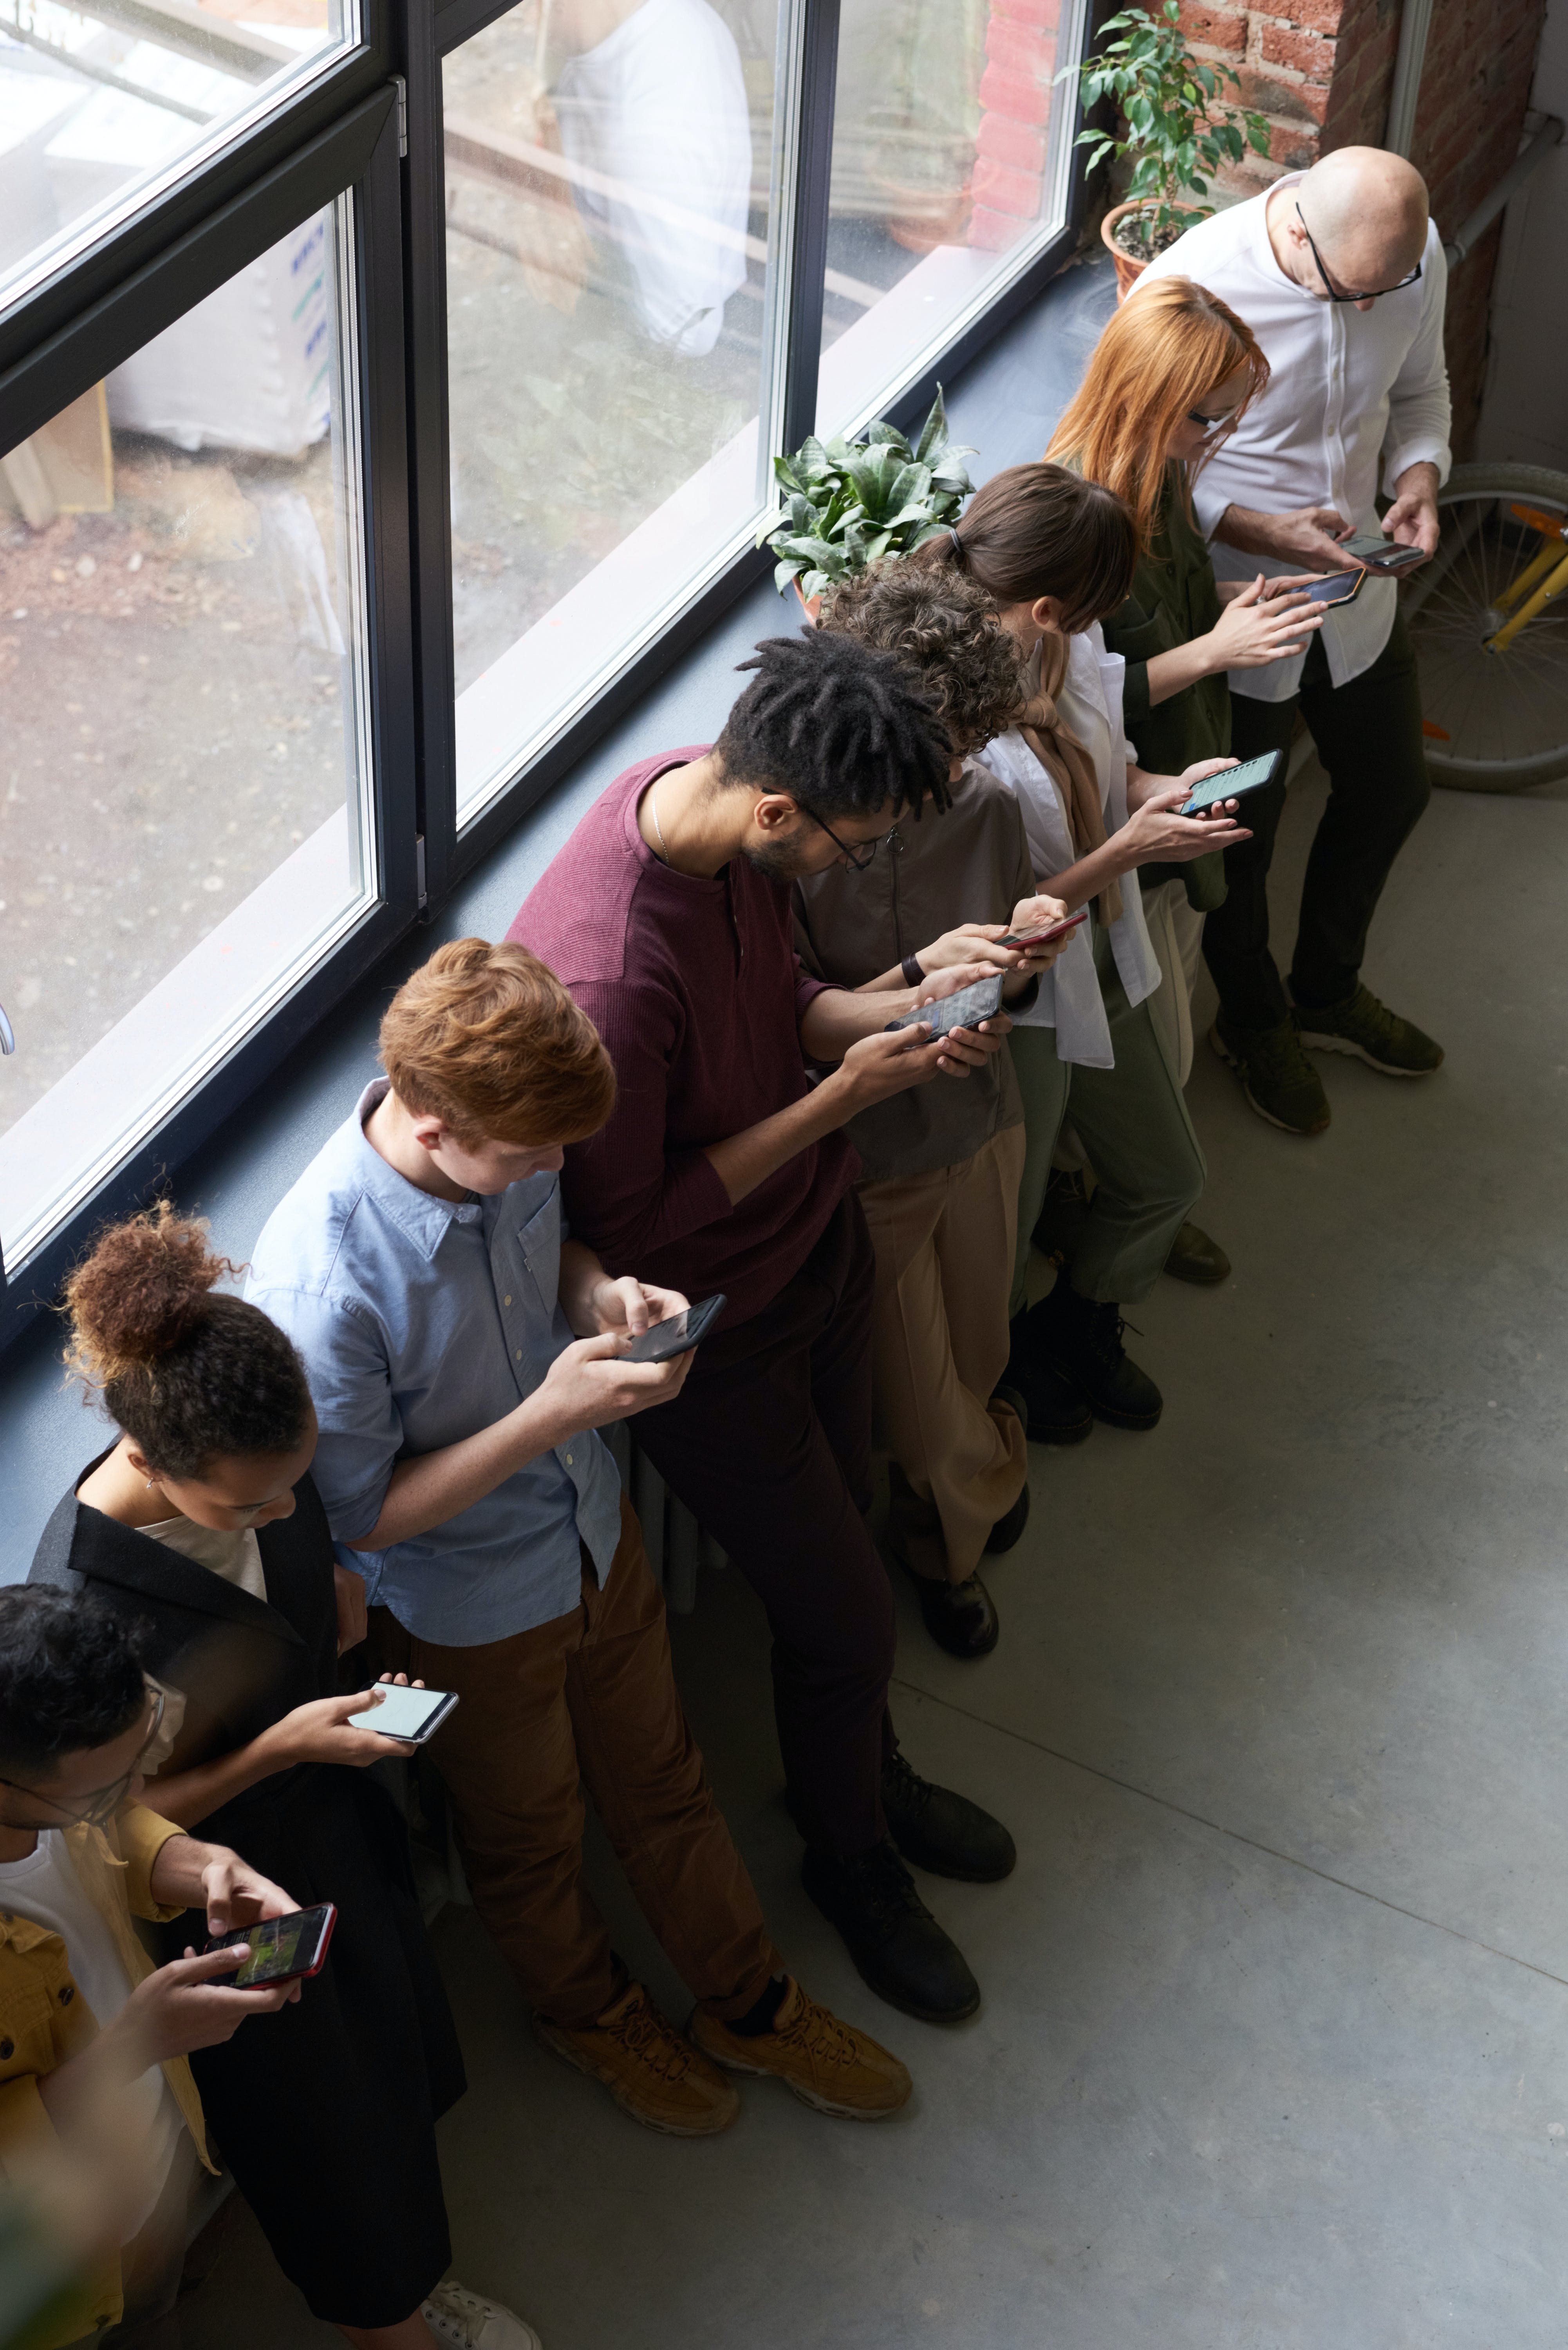 Des personnes font la queue tout en manipulant leur smartphone. | Source : Pexels